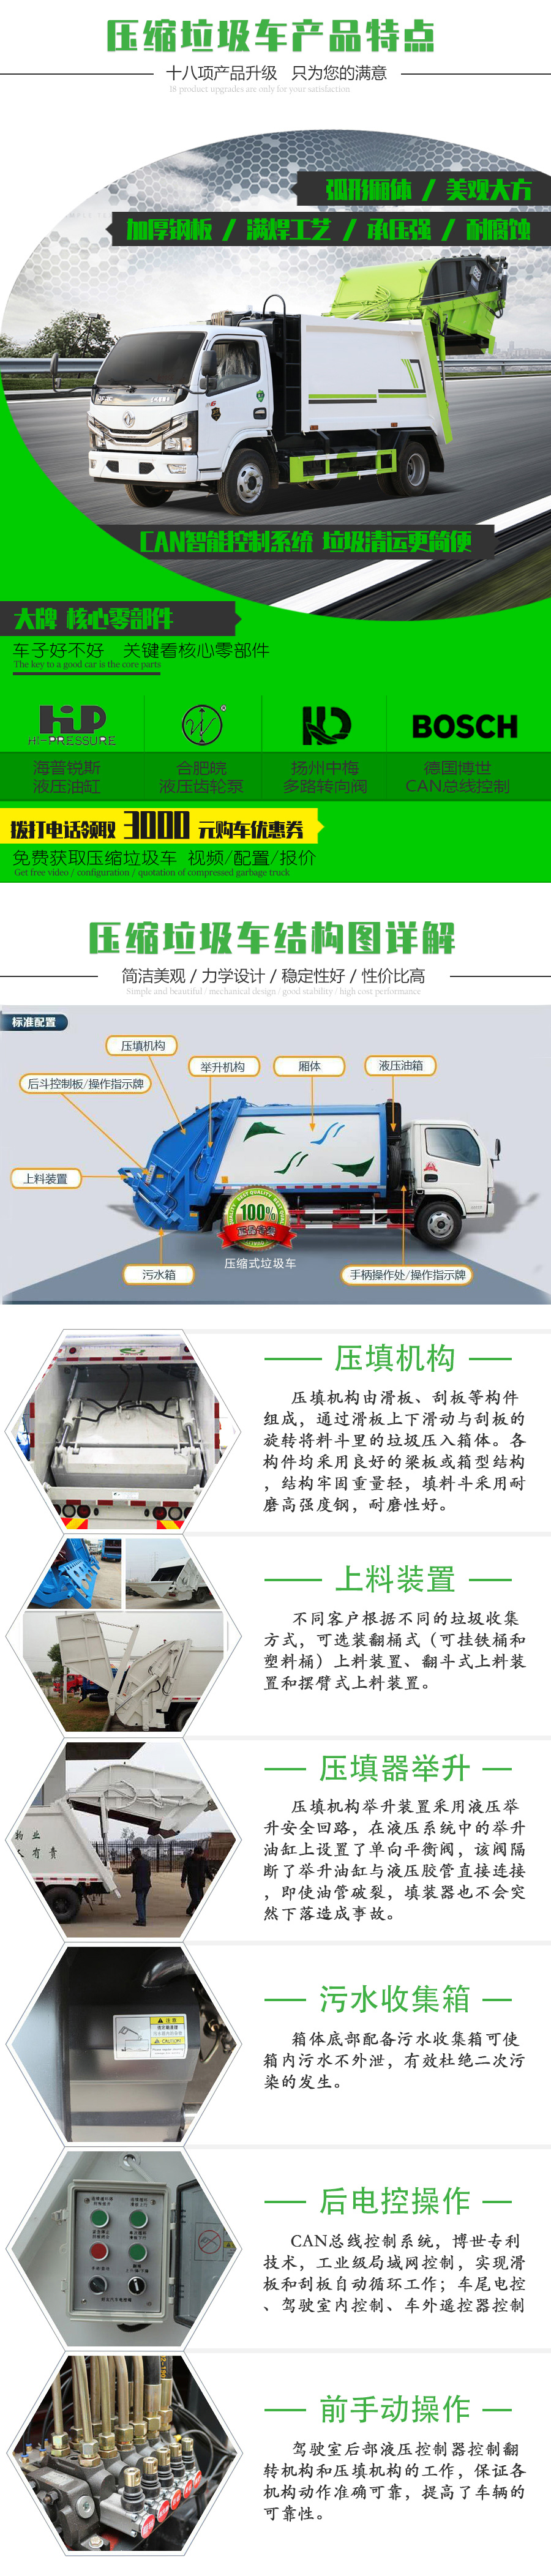 福田牌 国六 1.3吨密闭式桶装垃圾车